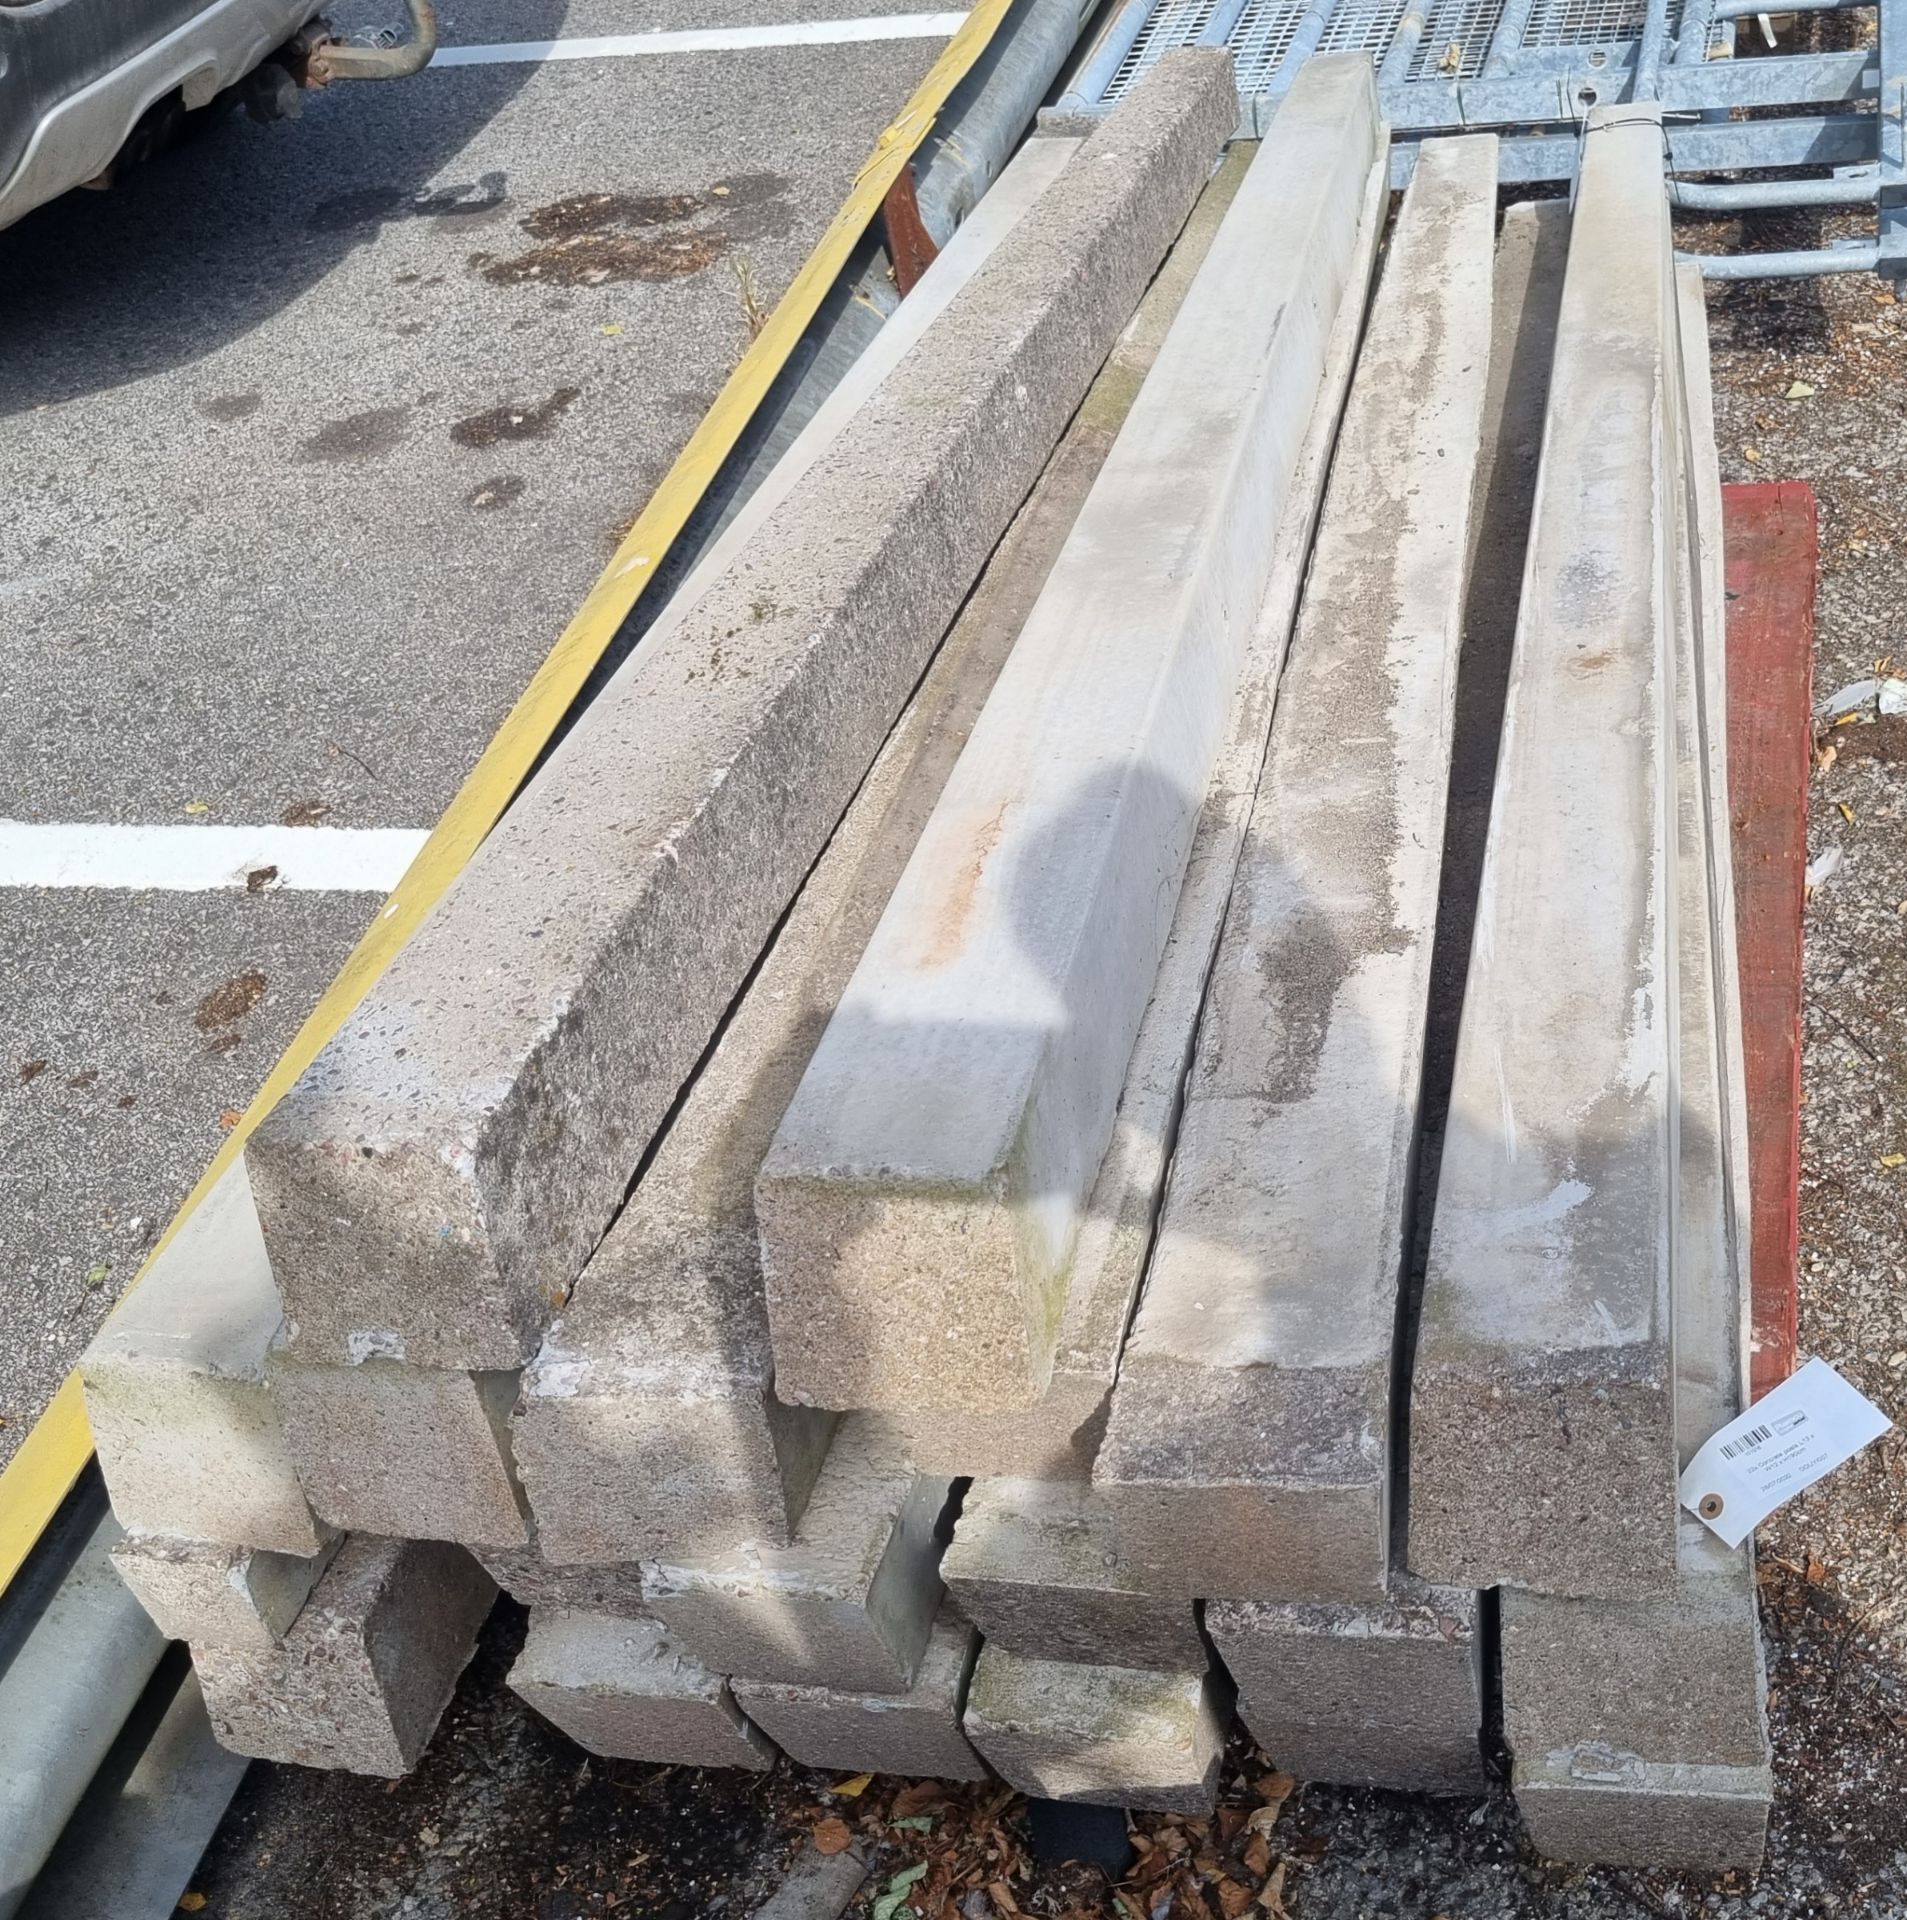 22x Concrete posts L13 x W12 x H190cm - Image 3 of 3